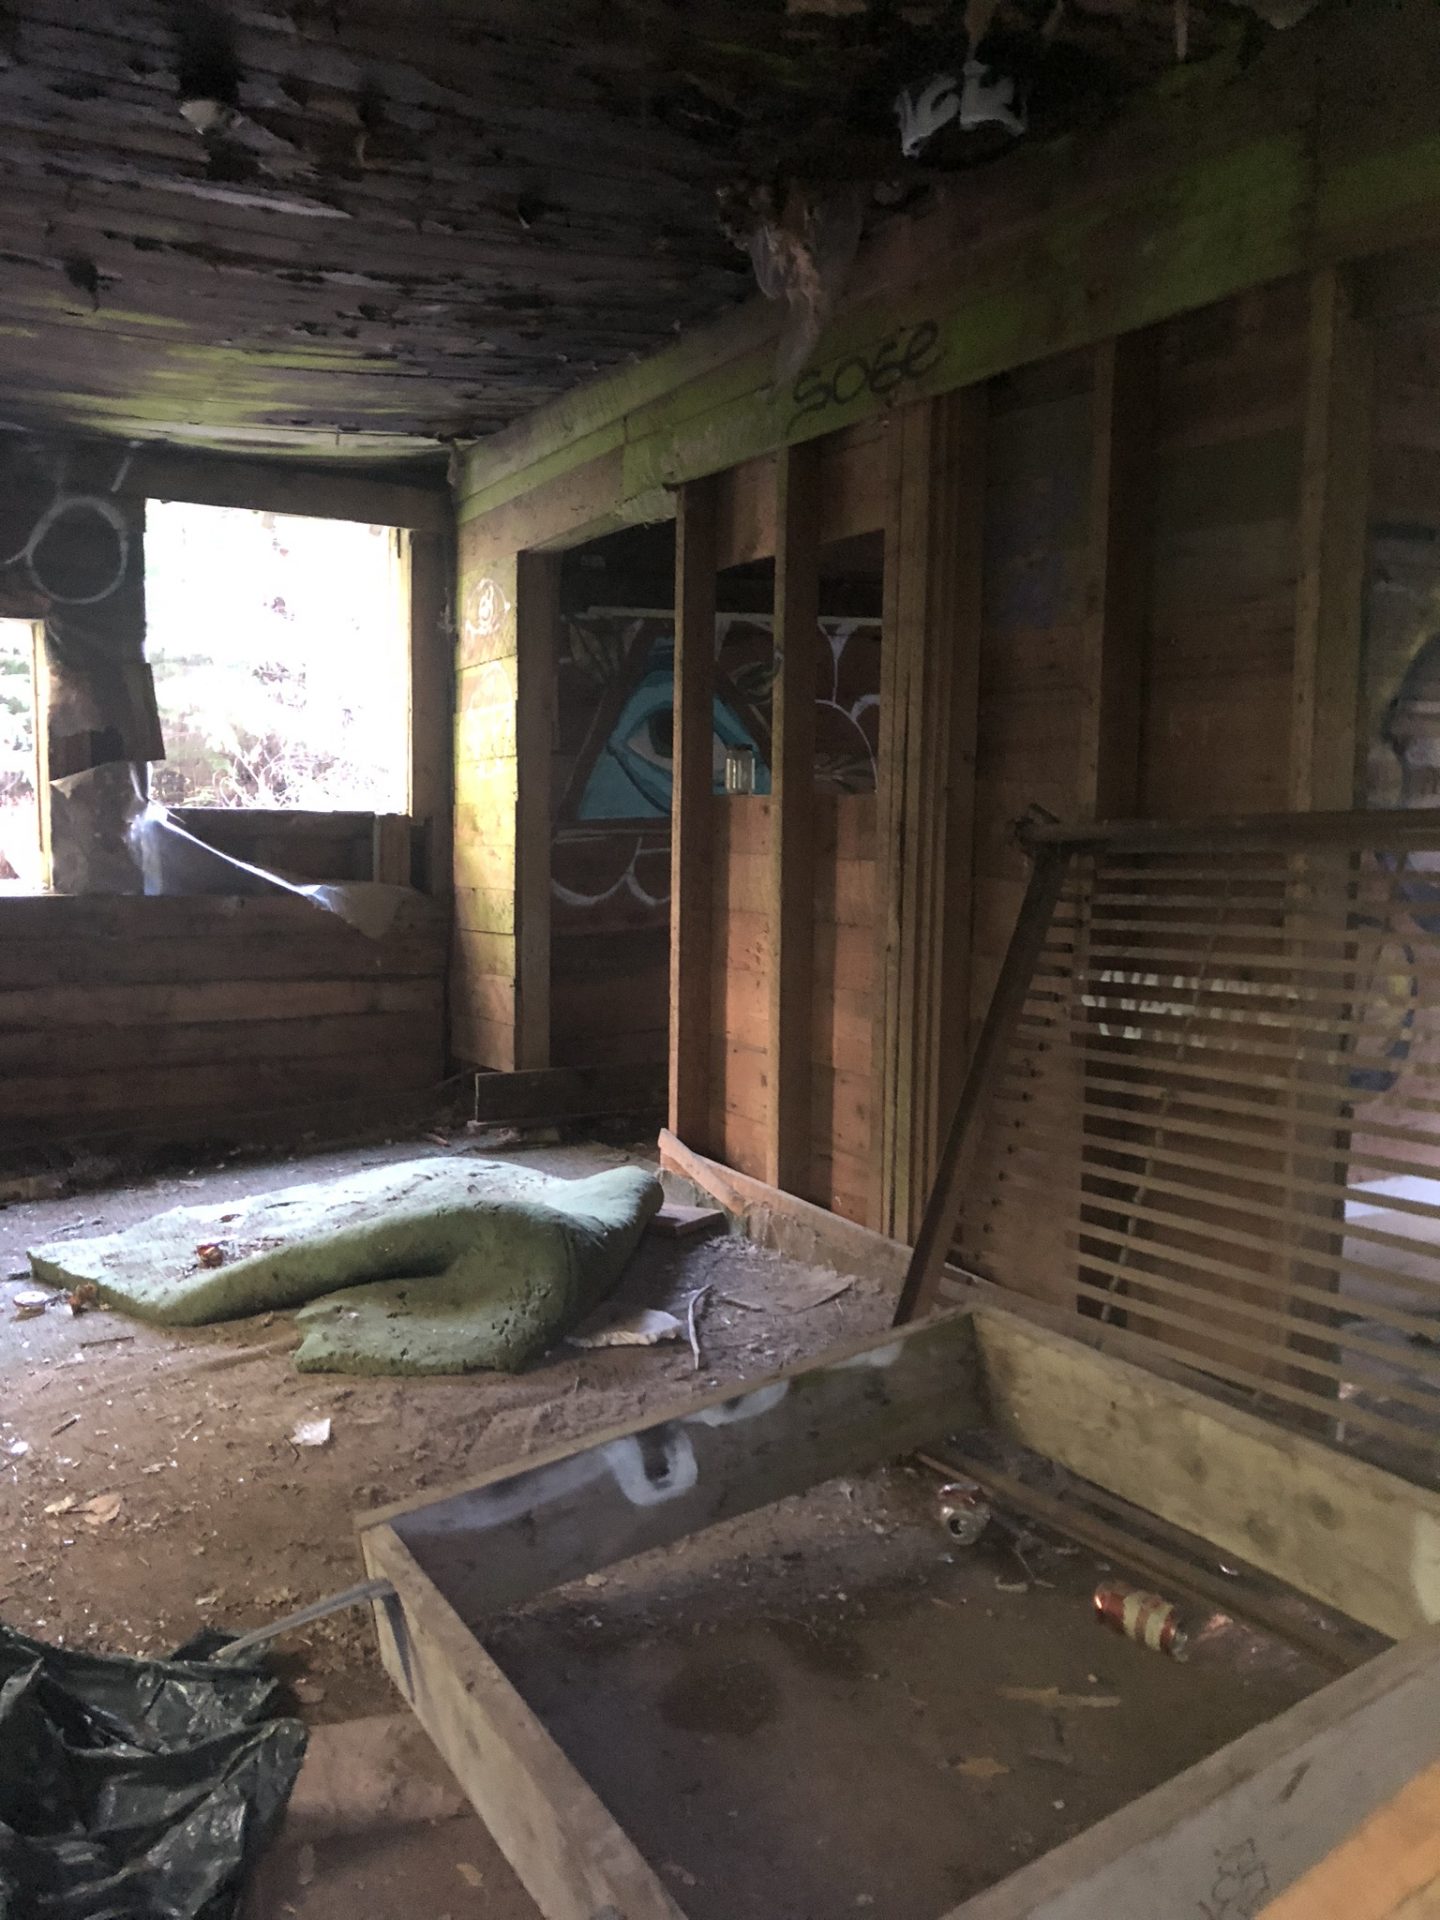 Inside the abandoned house in Parkhurst, Whistler